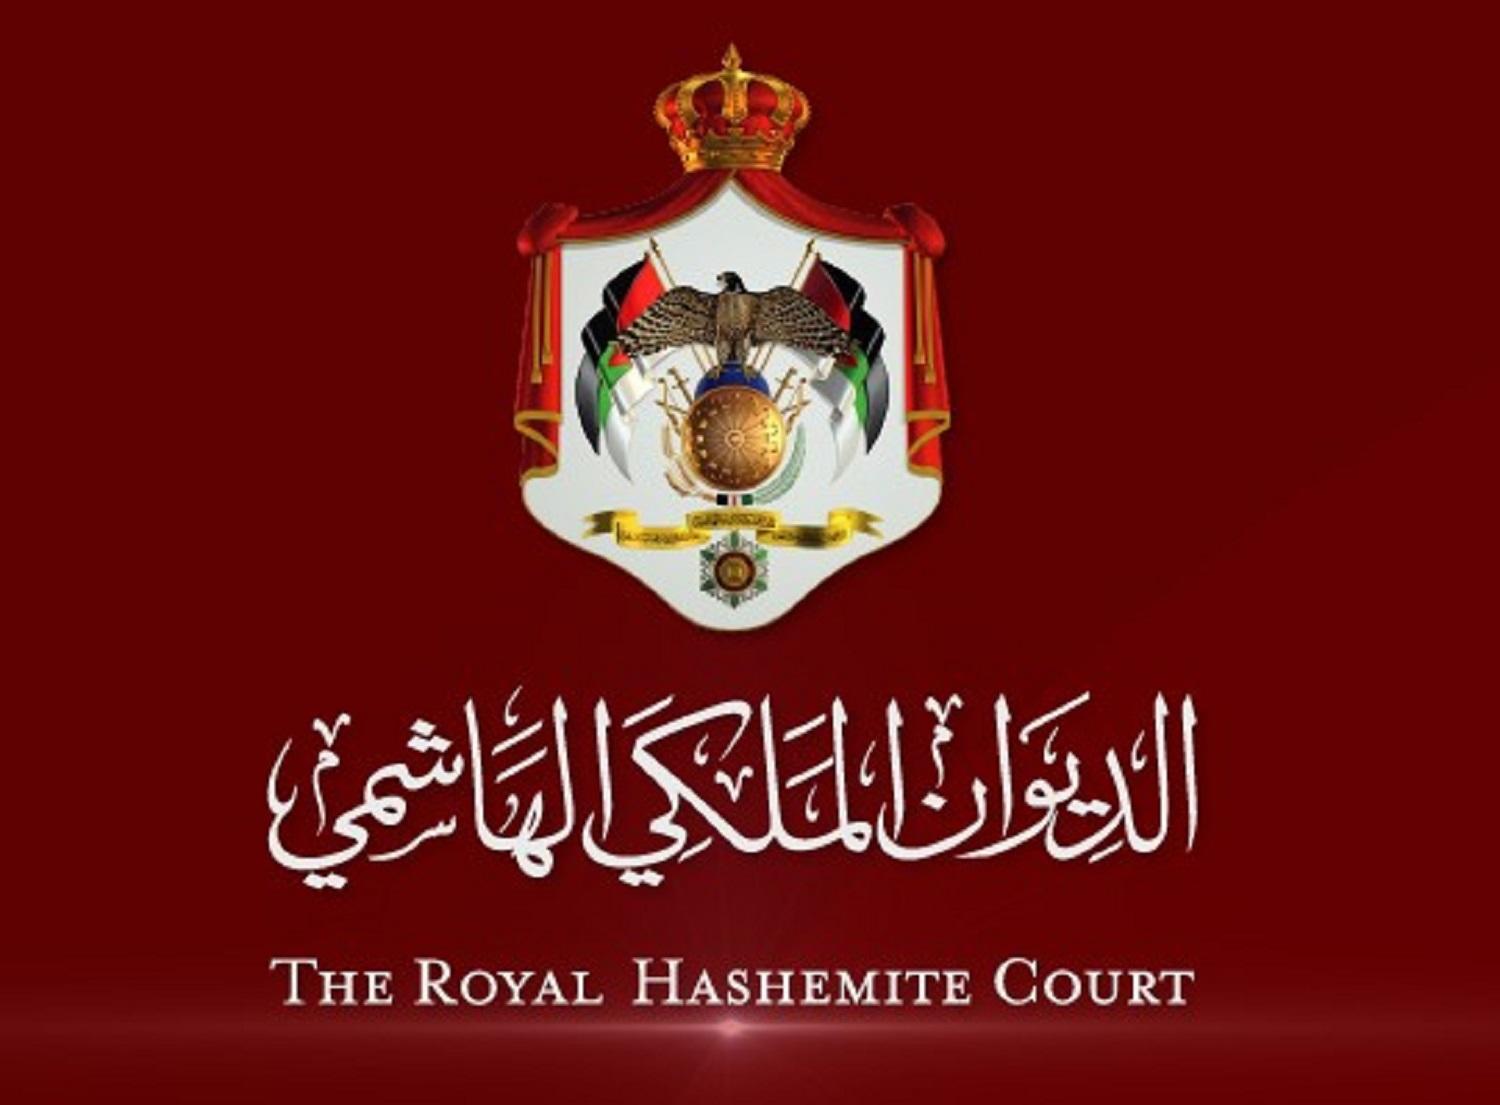 شعار الديوان الملكي الهاشمي.(الموقع الرسمي للديوان الملكي الهاشمي على موقع فيسبوك)    